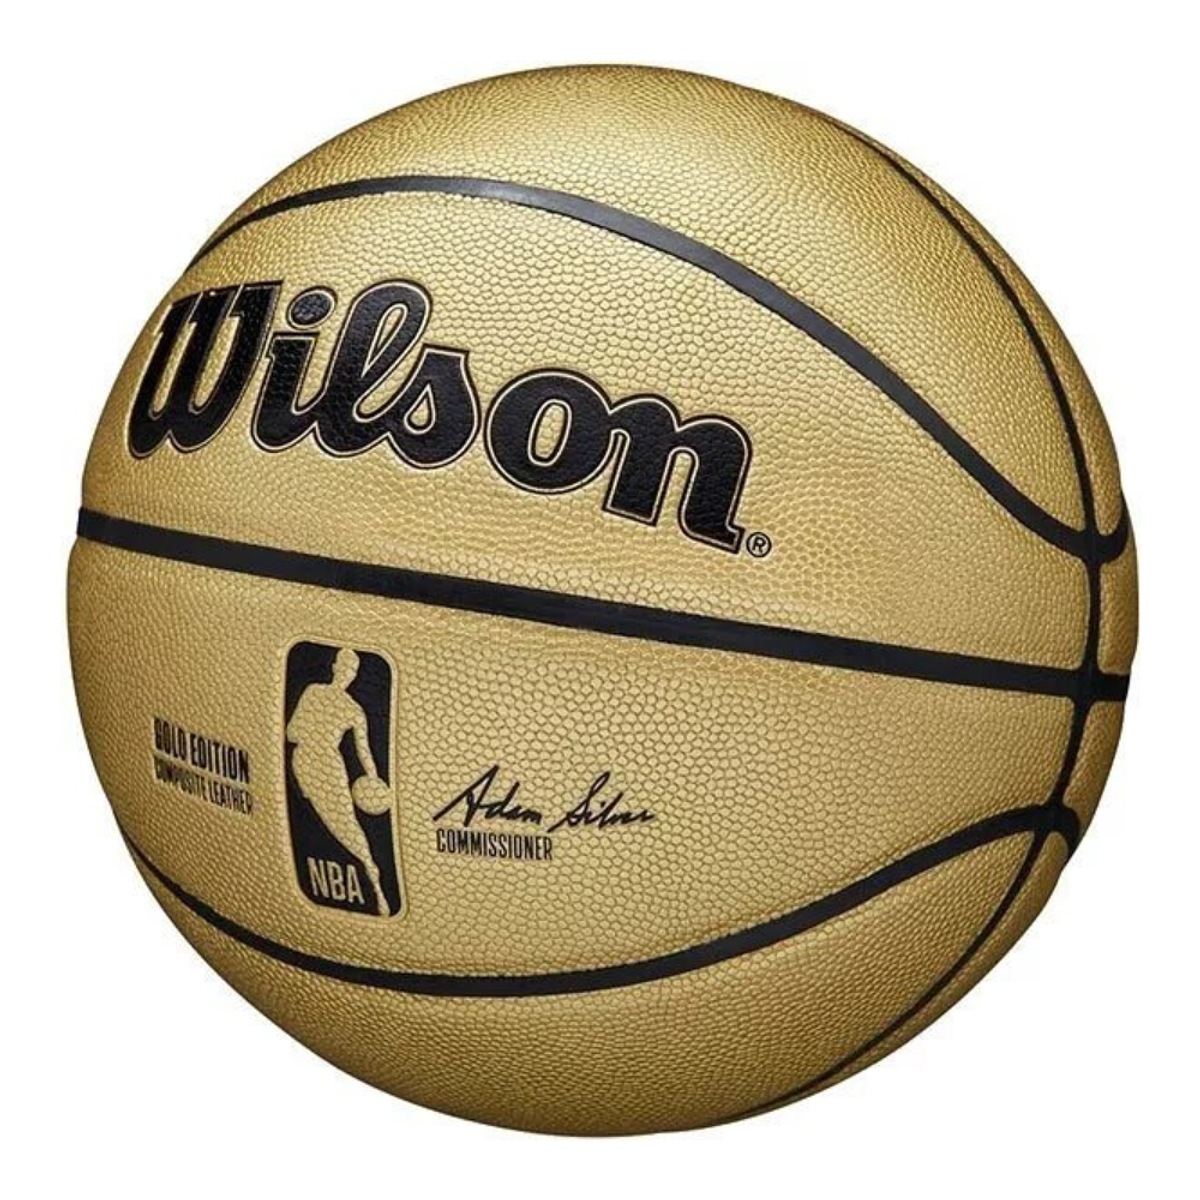 Wilson,Ballon de Basketball, MVP Basketball, Cao…